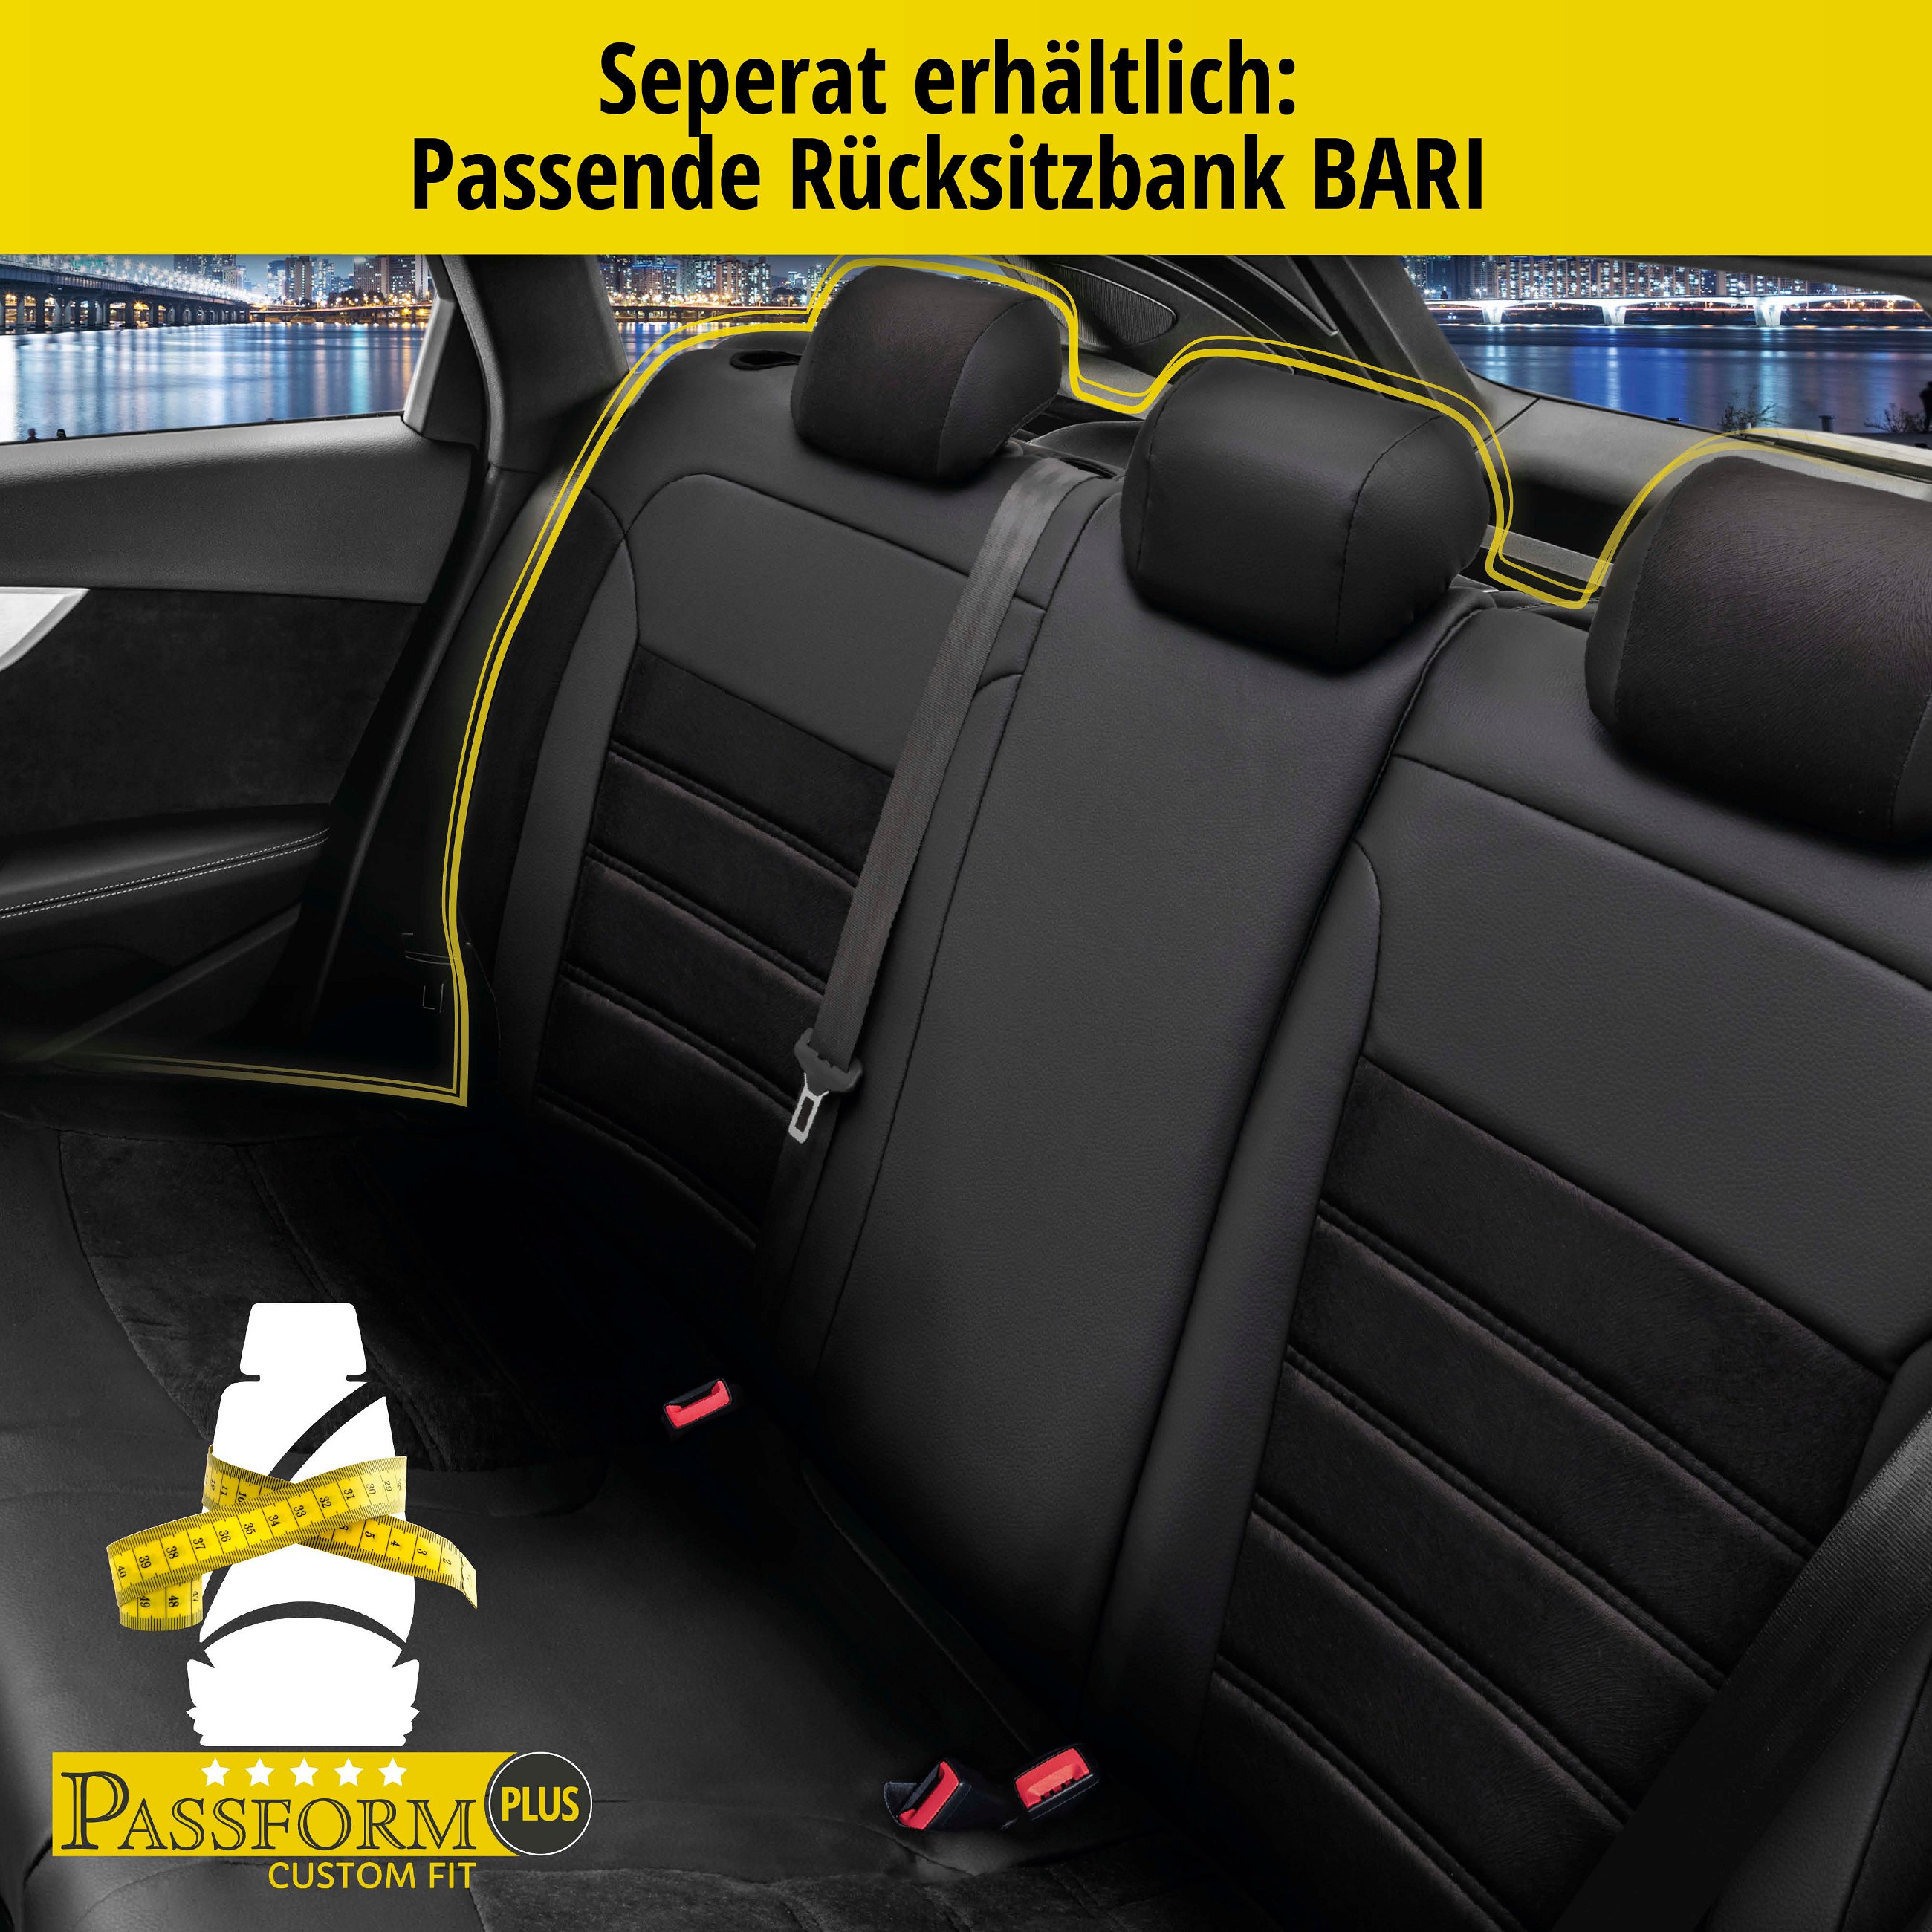 Passform Sitzbezug Bari für Ford Focus II Turnier 07/2004-09/2012, 2 Einzelsitzbezüge für Normalsitze